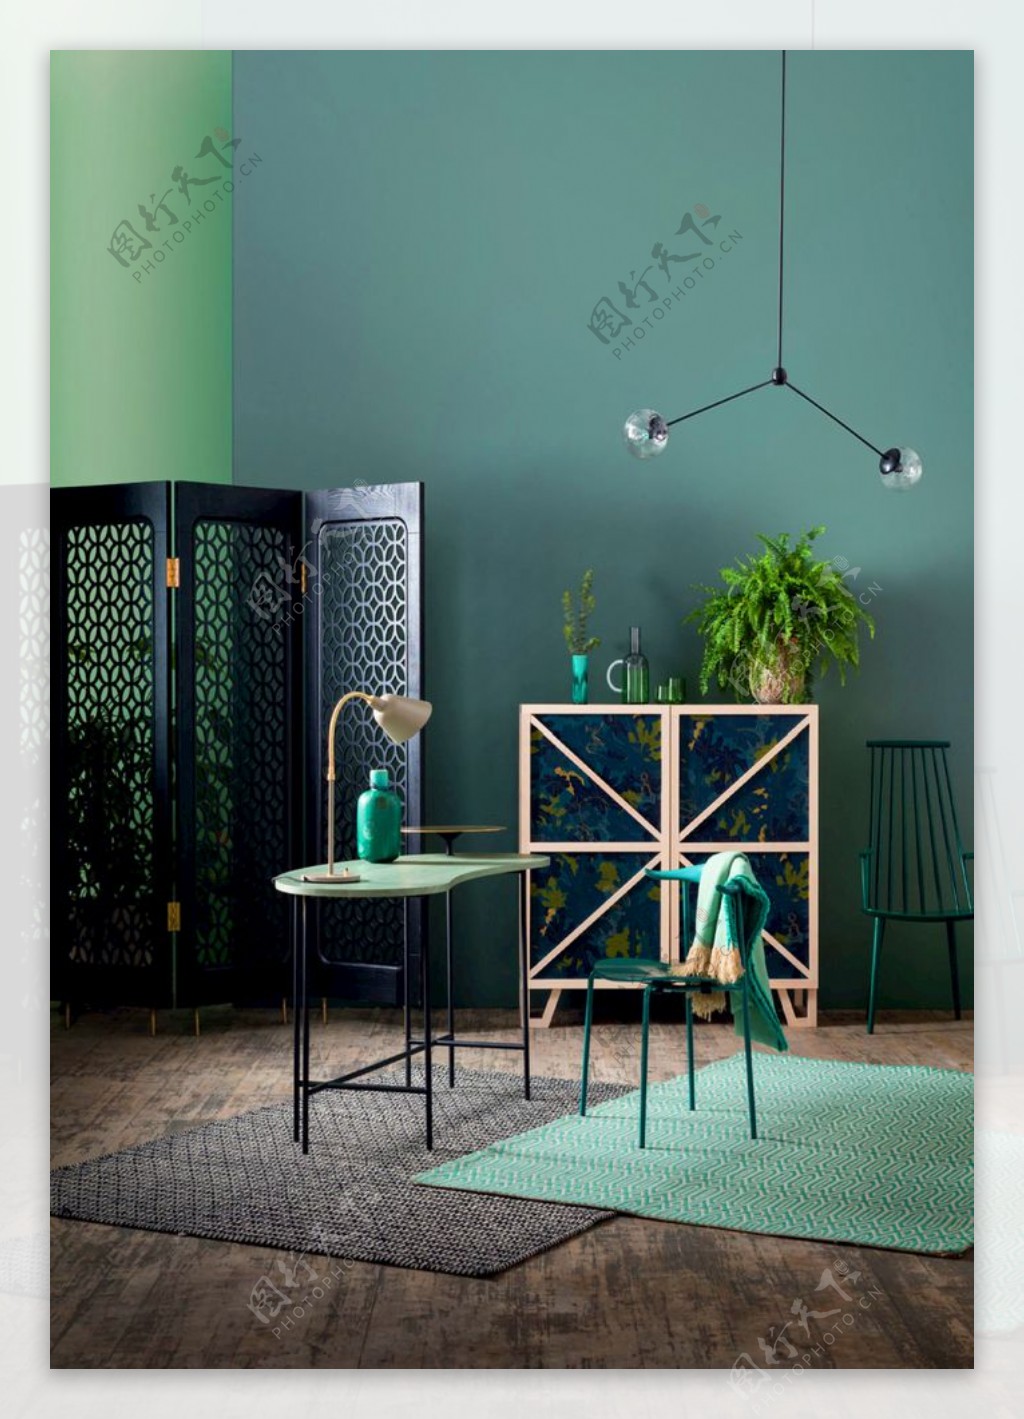 新中式家具和绿色墙面图片